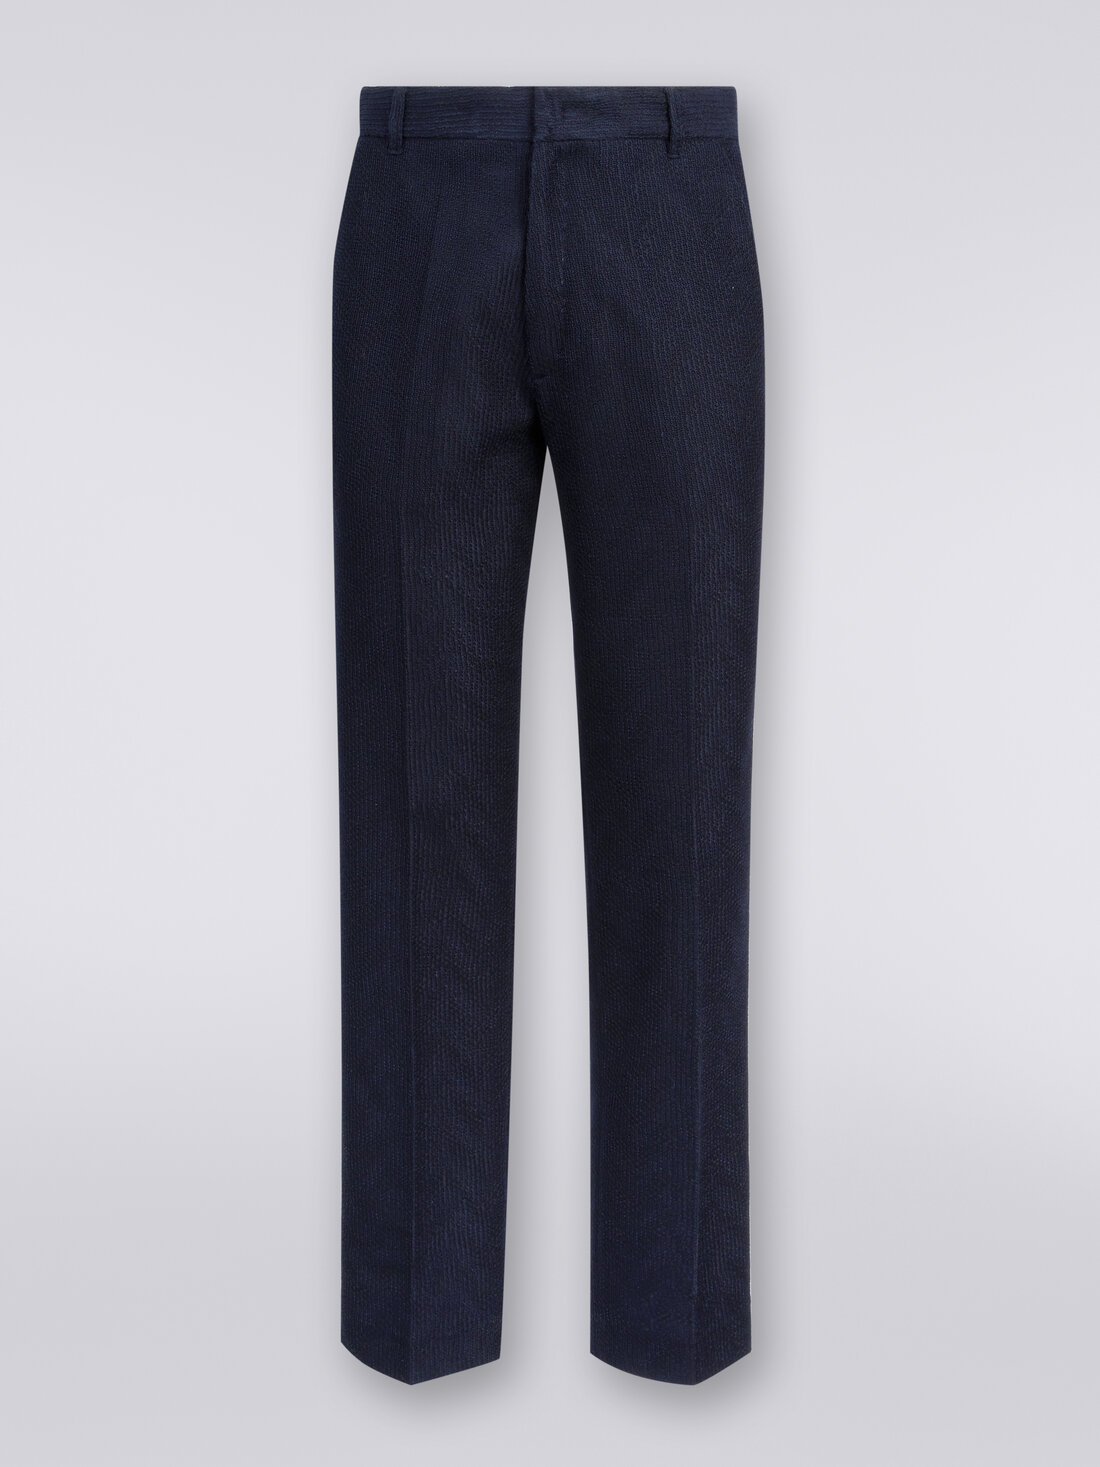 Pantaloni chino in cotone chevron, Blu Navy  - US23WI0OBT0066S72FF - 0